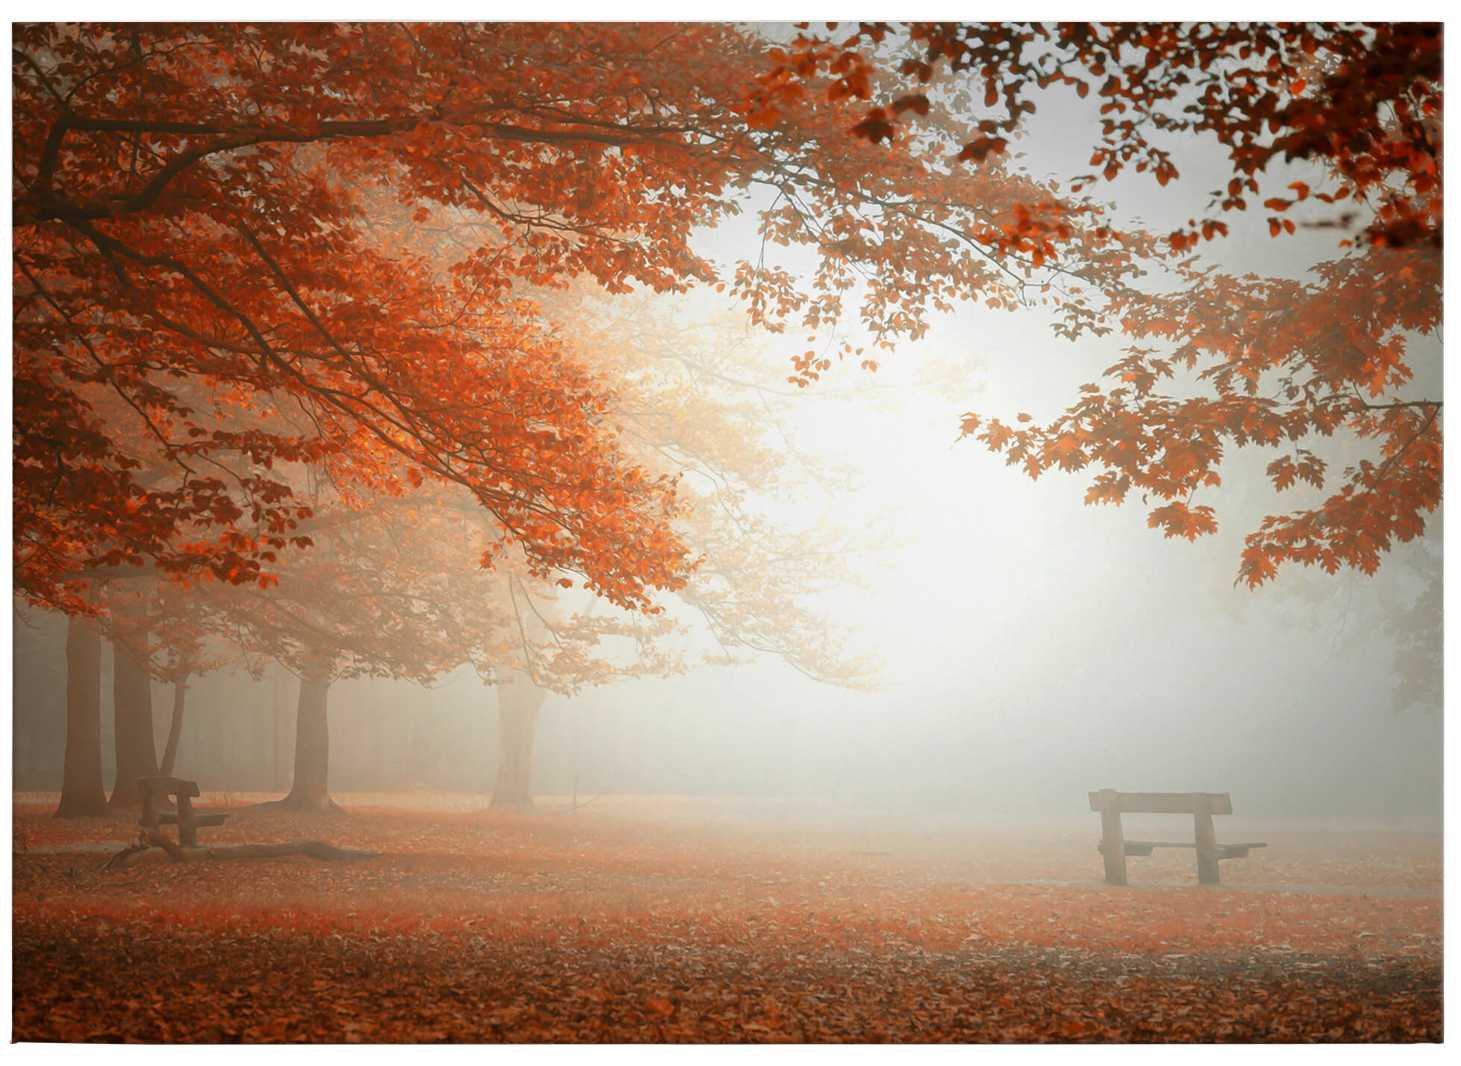             Lienzo Dingemans Árboles de otoño y follaje en la niebla - 0,70 m x 0,50 m
        